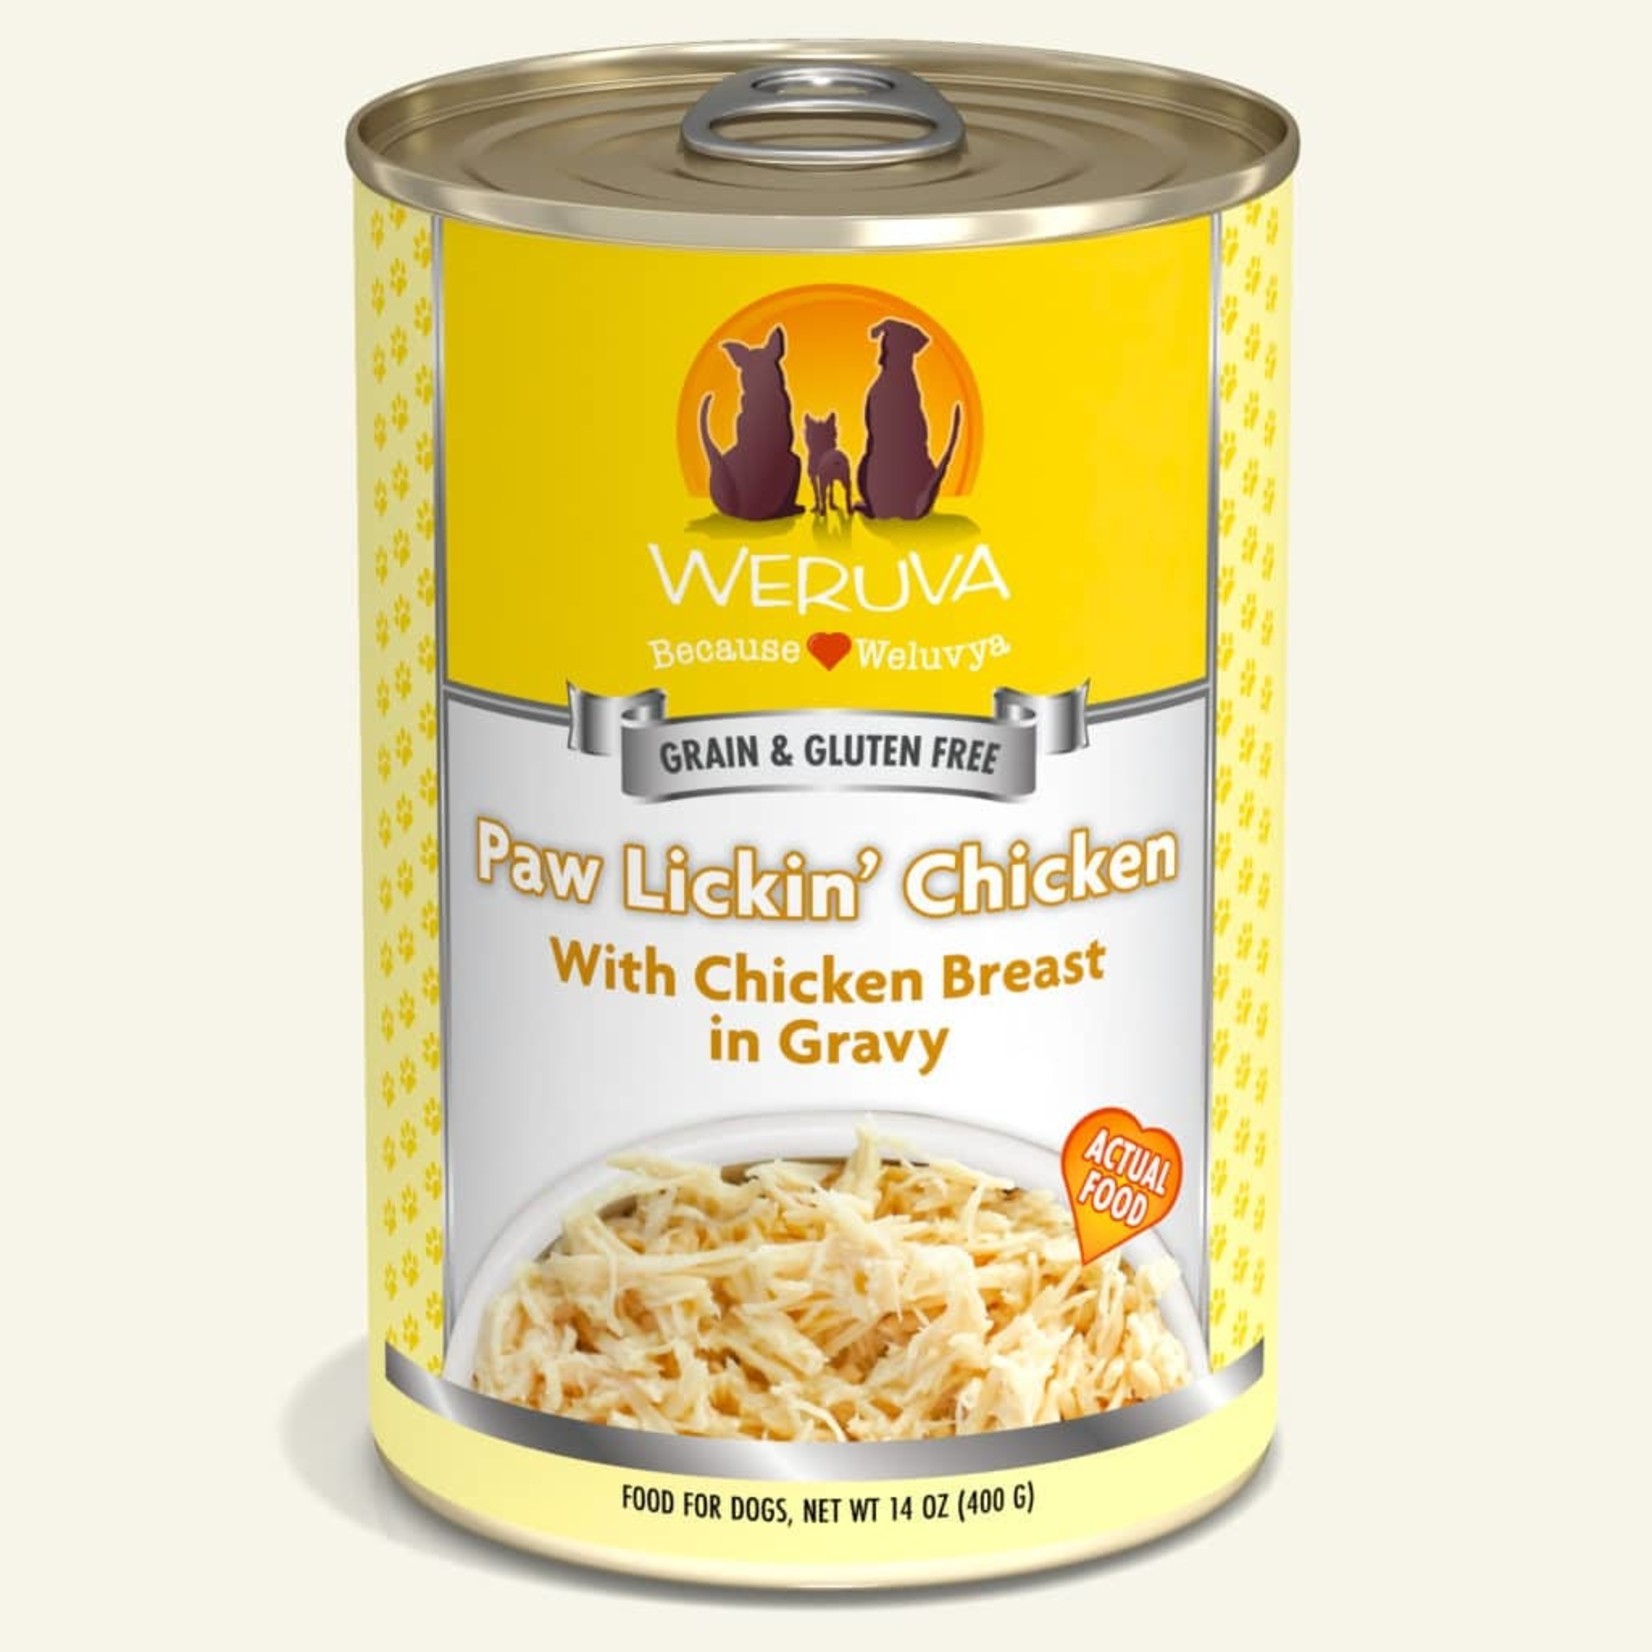 Weruva Weruva Classic Wet Dog Food Paw Lickin' Chicken with Chicken Breast in Gravy 14oz Can Grain Free